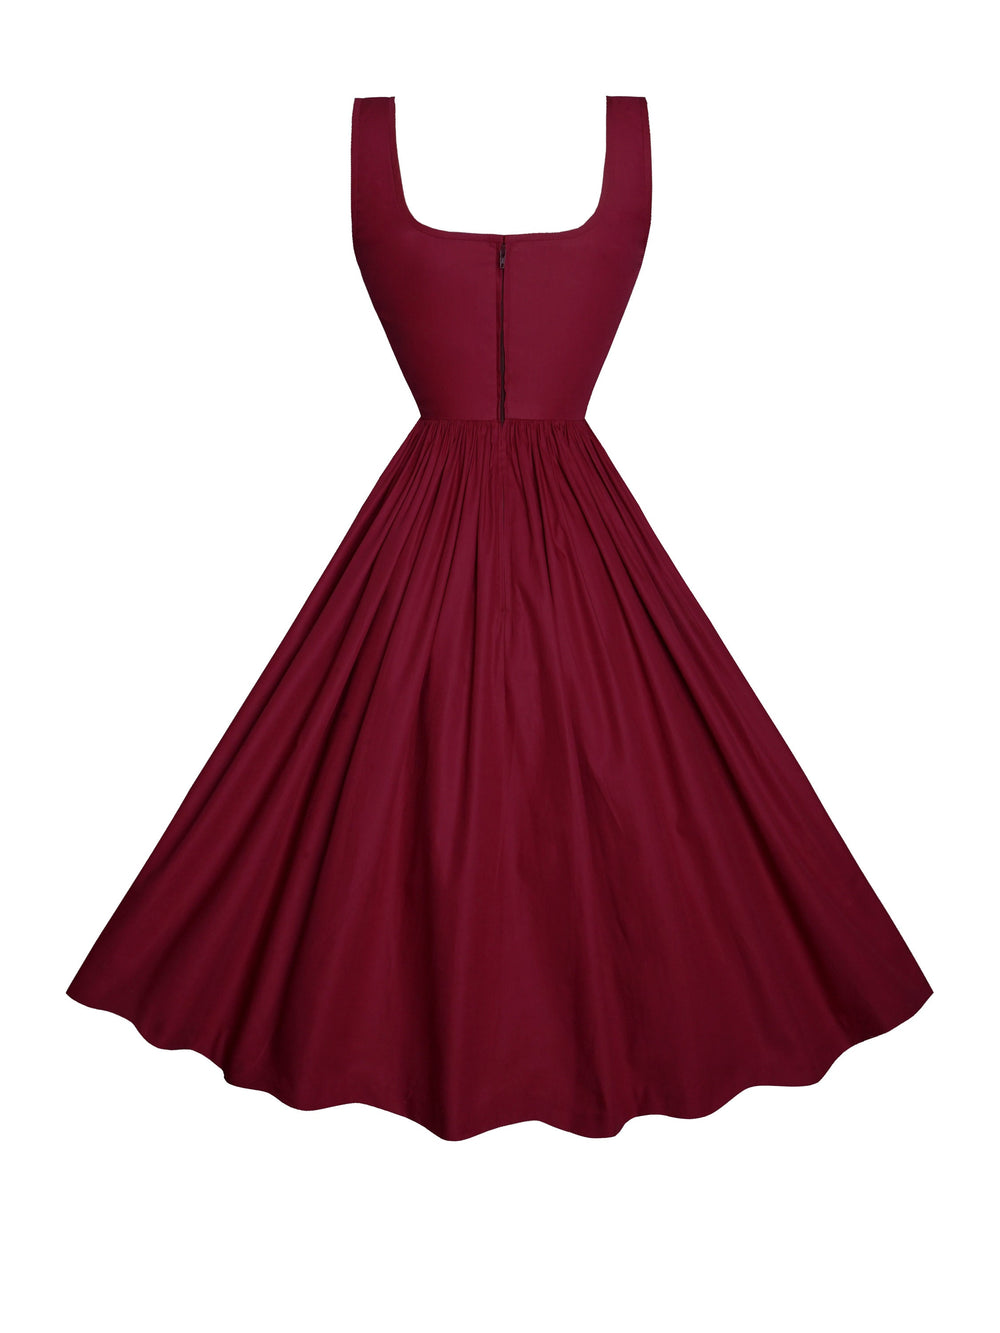 MTO - Michelle Dress in Burgundy Cotton